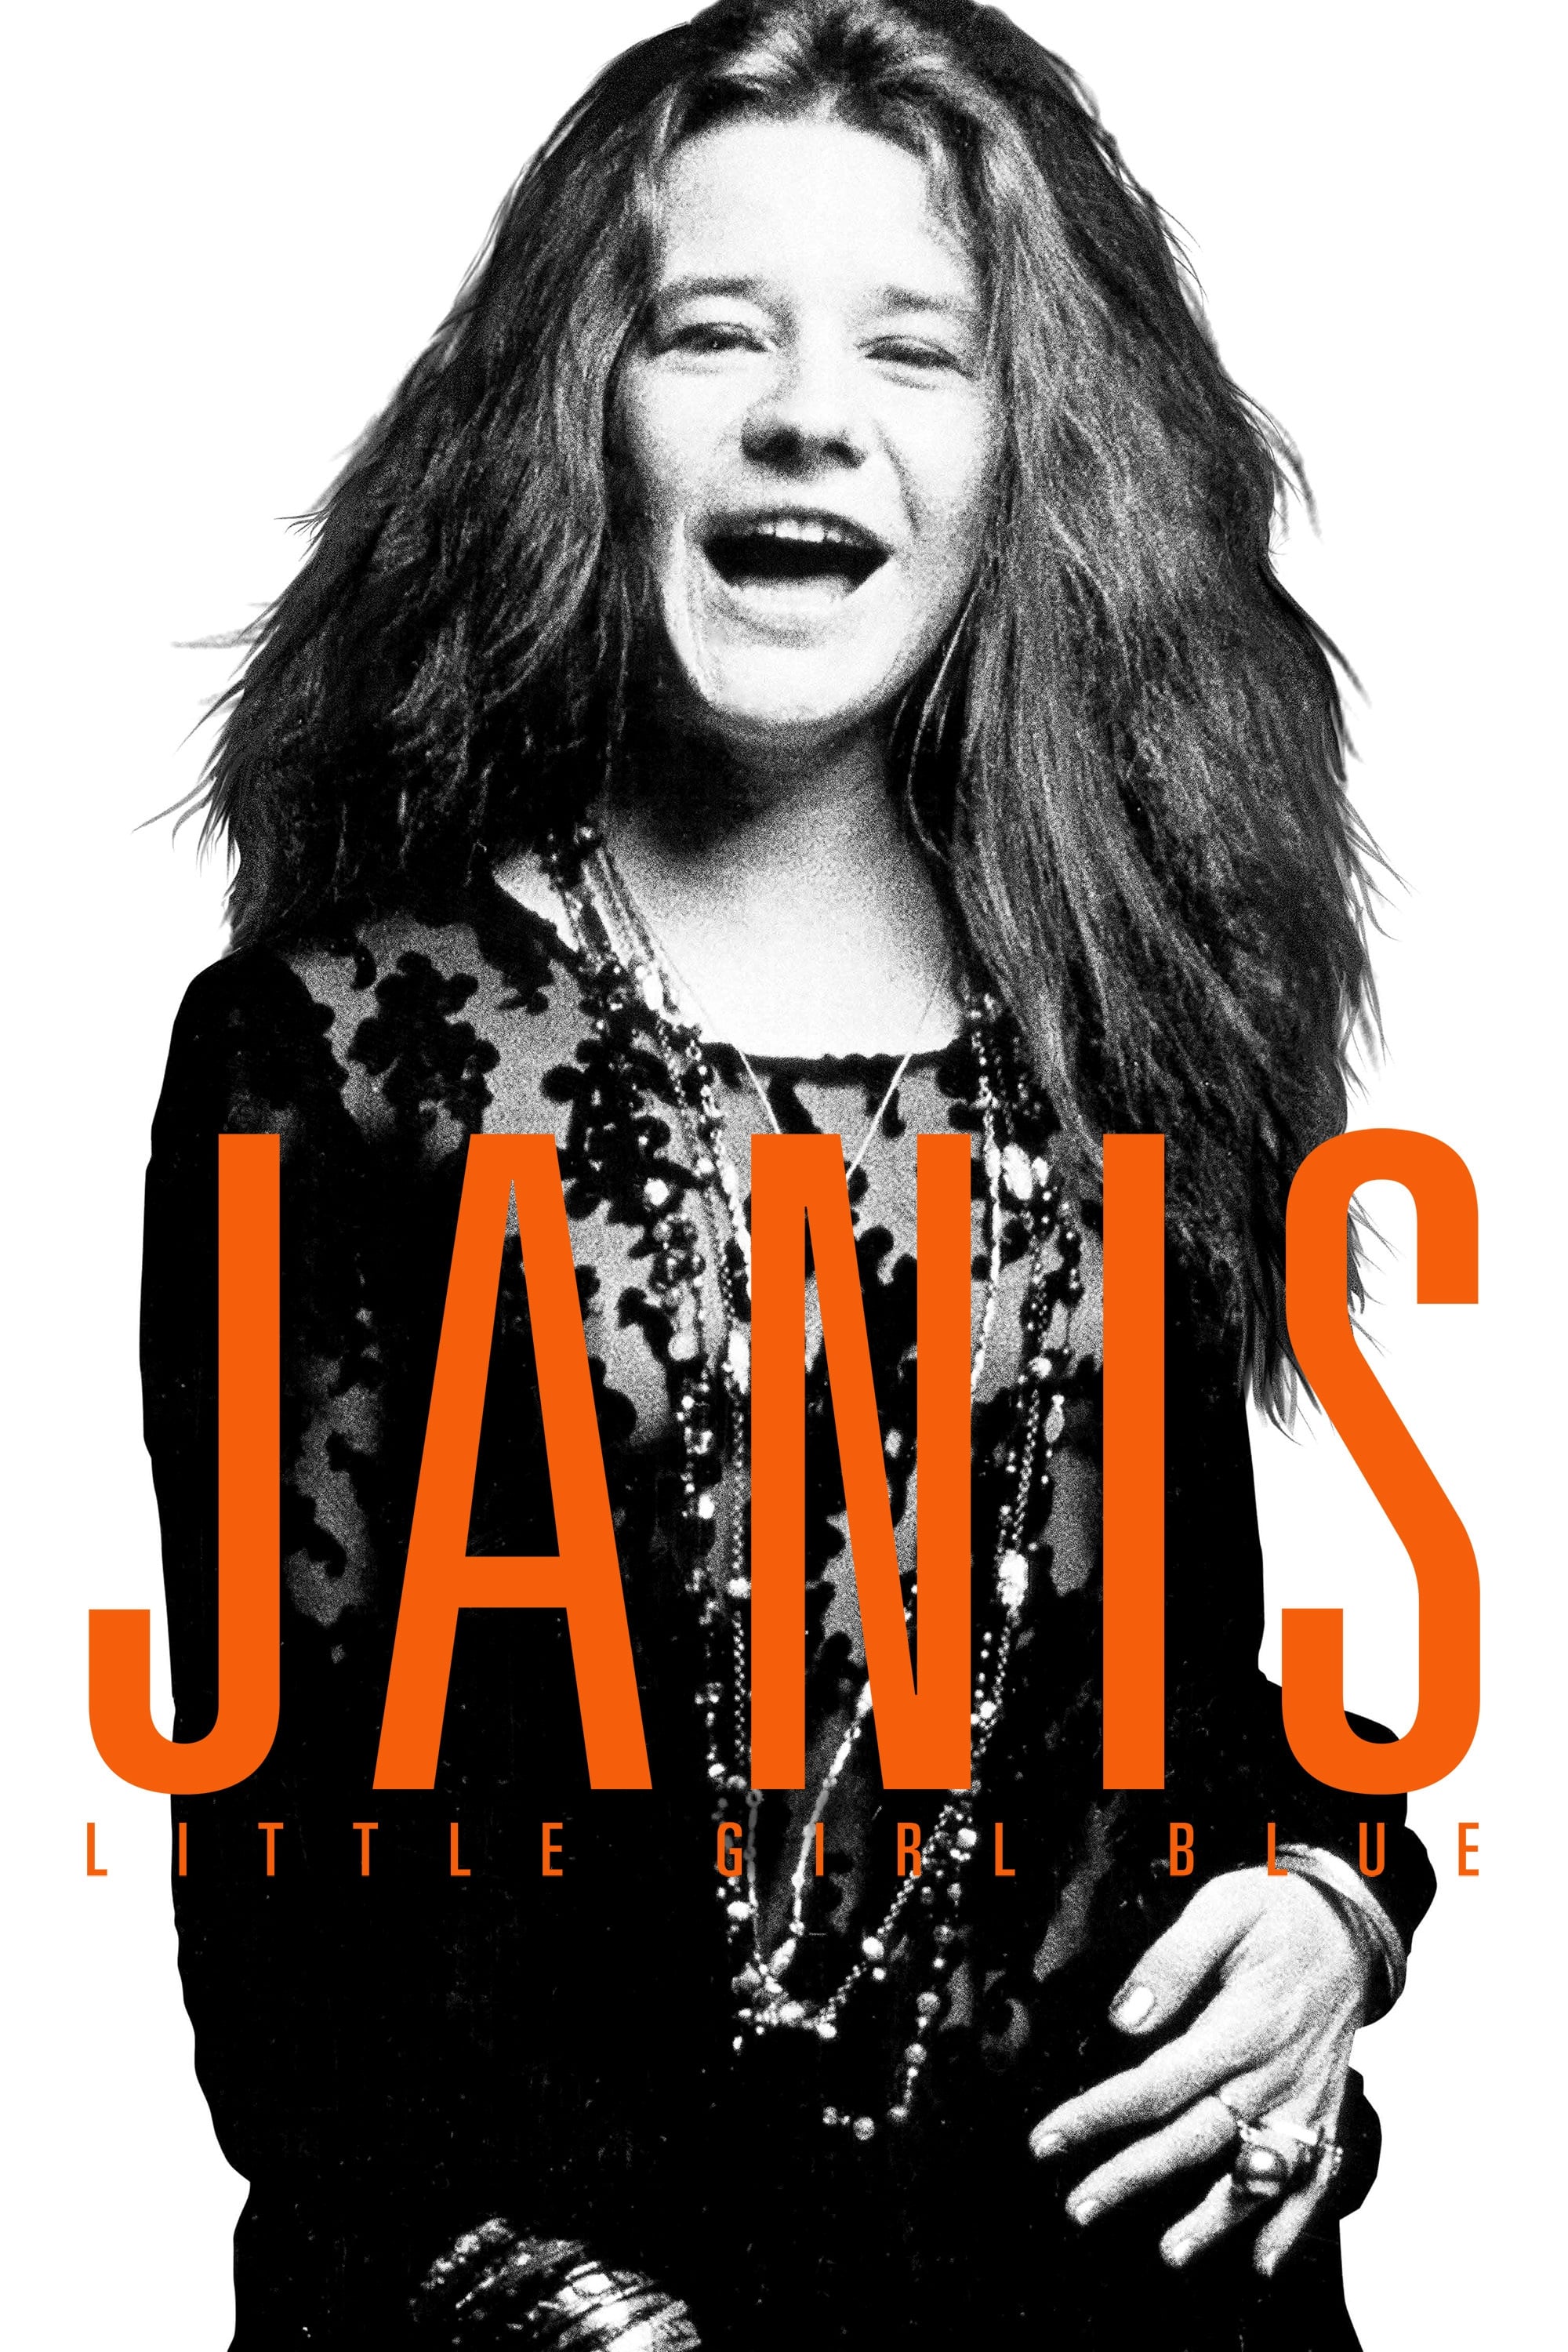 Janis - Little Girl Blue